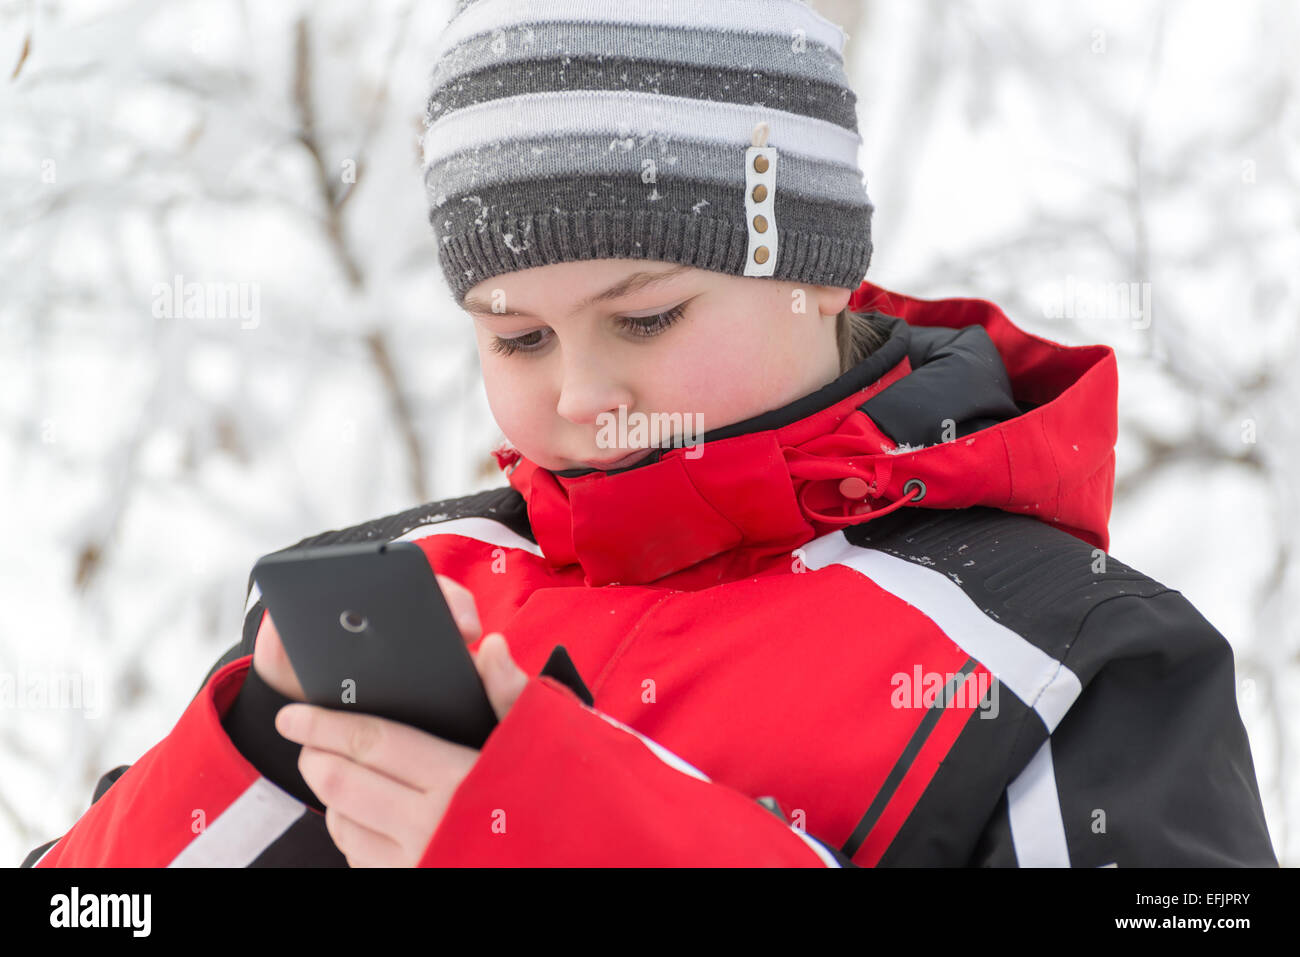 Adolescents sms écrit dans winter park Banque D'Images